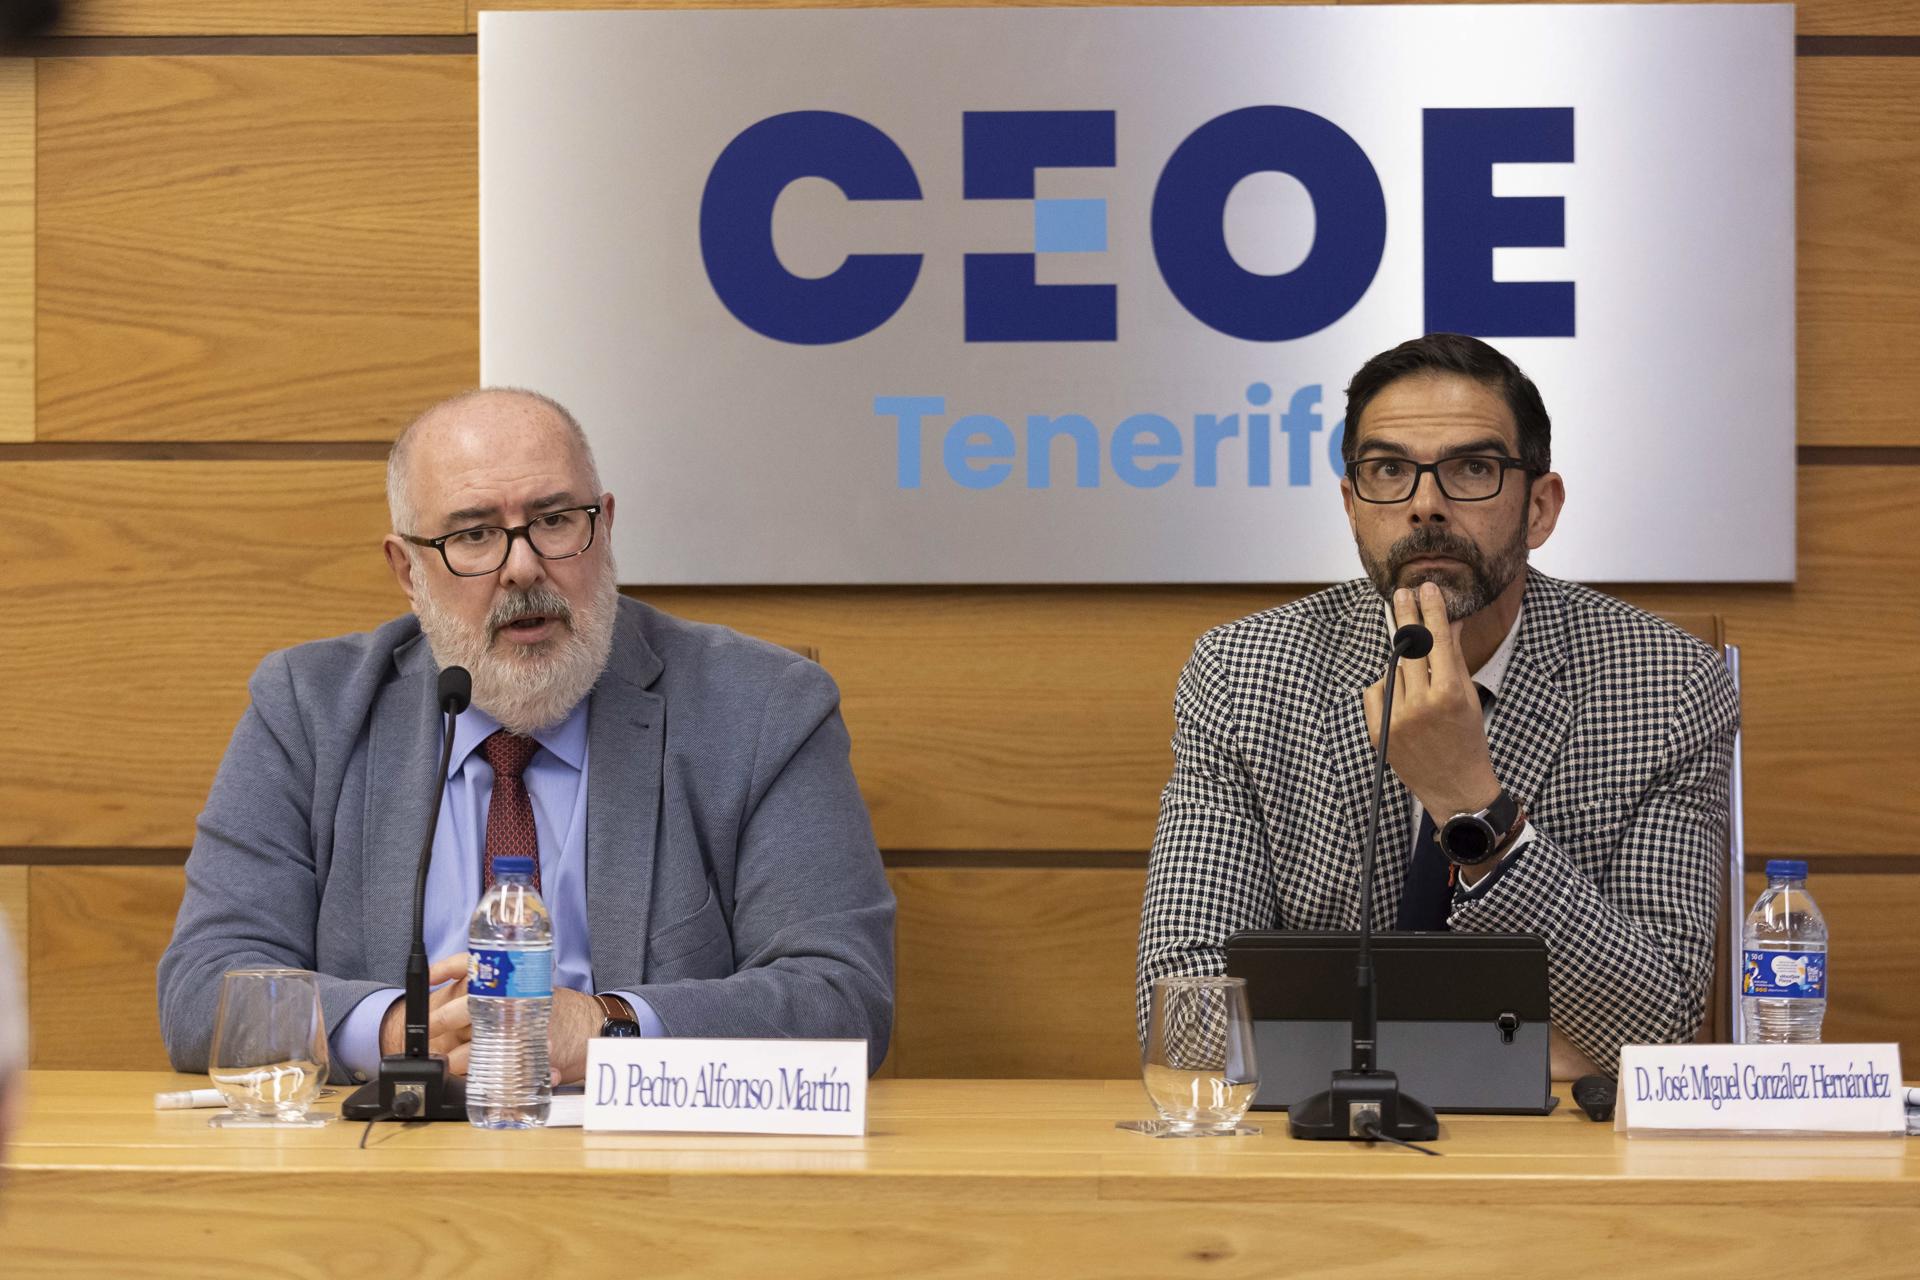 El presidente de la CEOE Tenerife, Pedro Aflonso Martín, durante la presentación junto al director de consultoría de corporación 5 , José Miguel González, han presentado el informe de coyuntura económica. EFE/Miguel Barreto